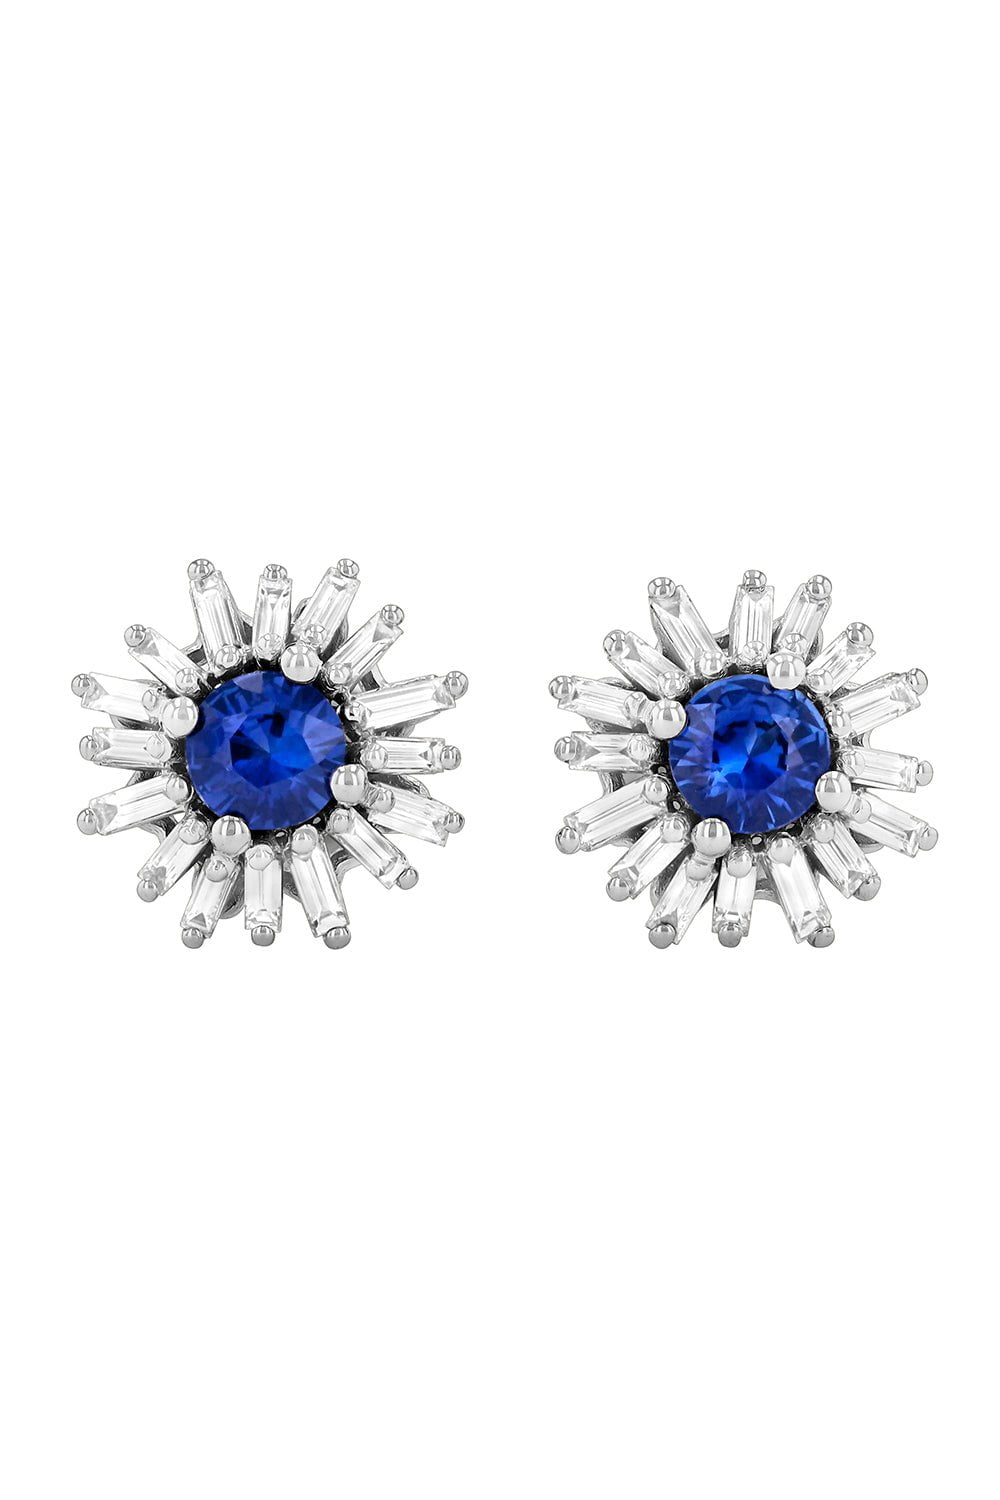 Blue Sapphire Baguette Stud Earrings JEWELRYFINE JEWELEARRING SUZANNE KALAN   